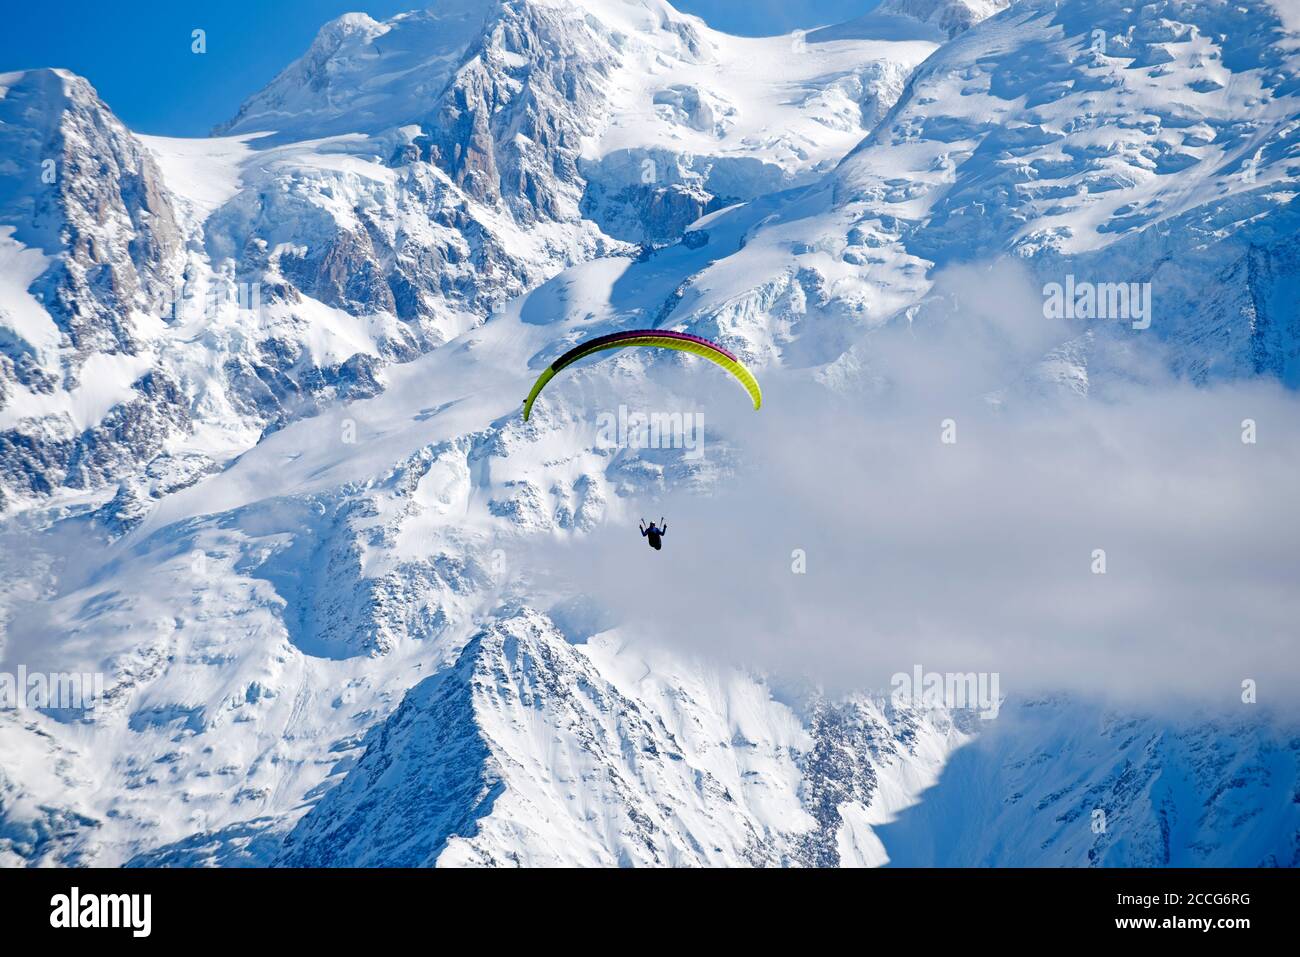 France, Haute-Savoie, Passy, Alps, paraglider, Mont Blanc moutain range Stock Photo